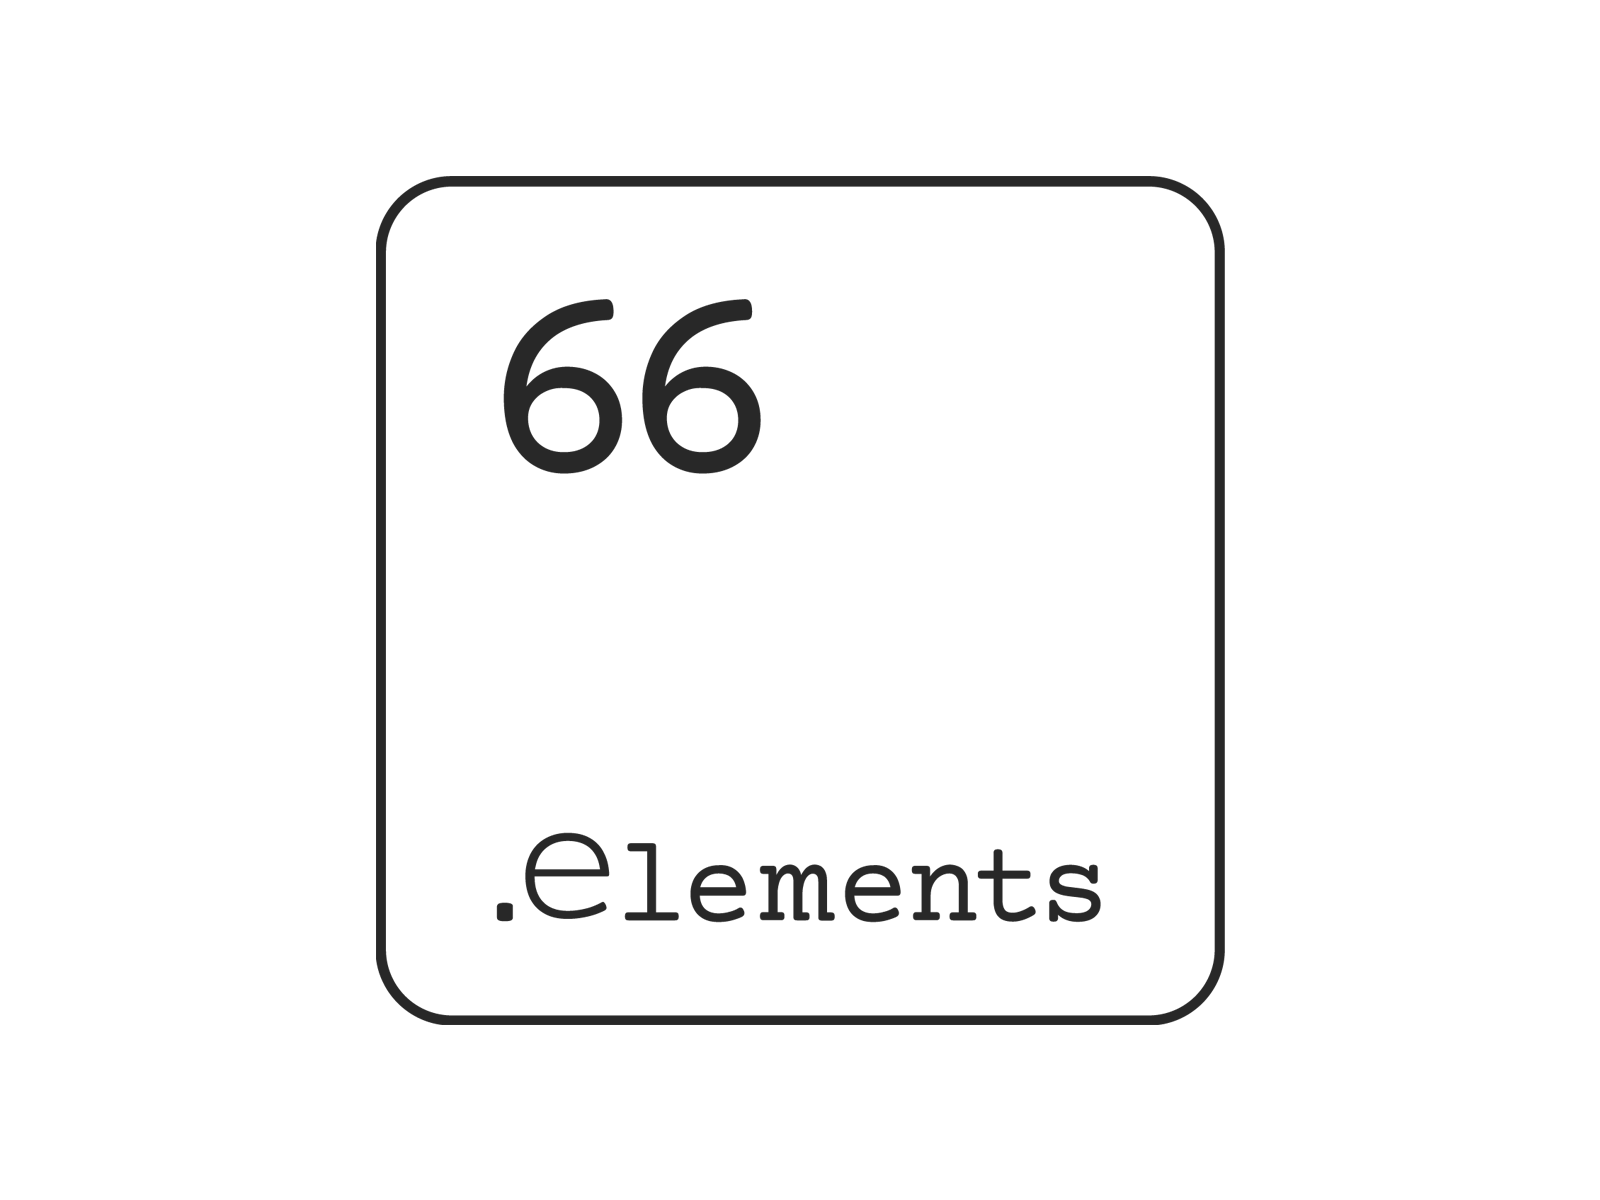 66elements logo